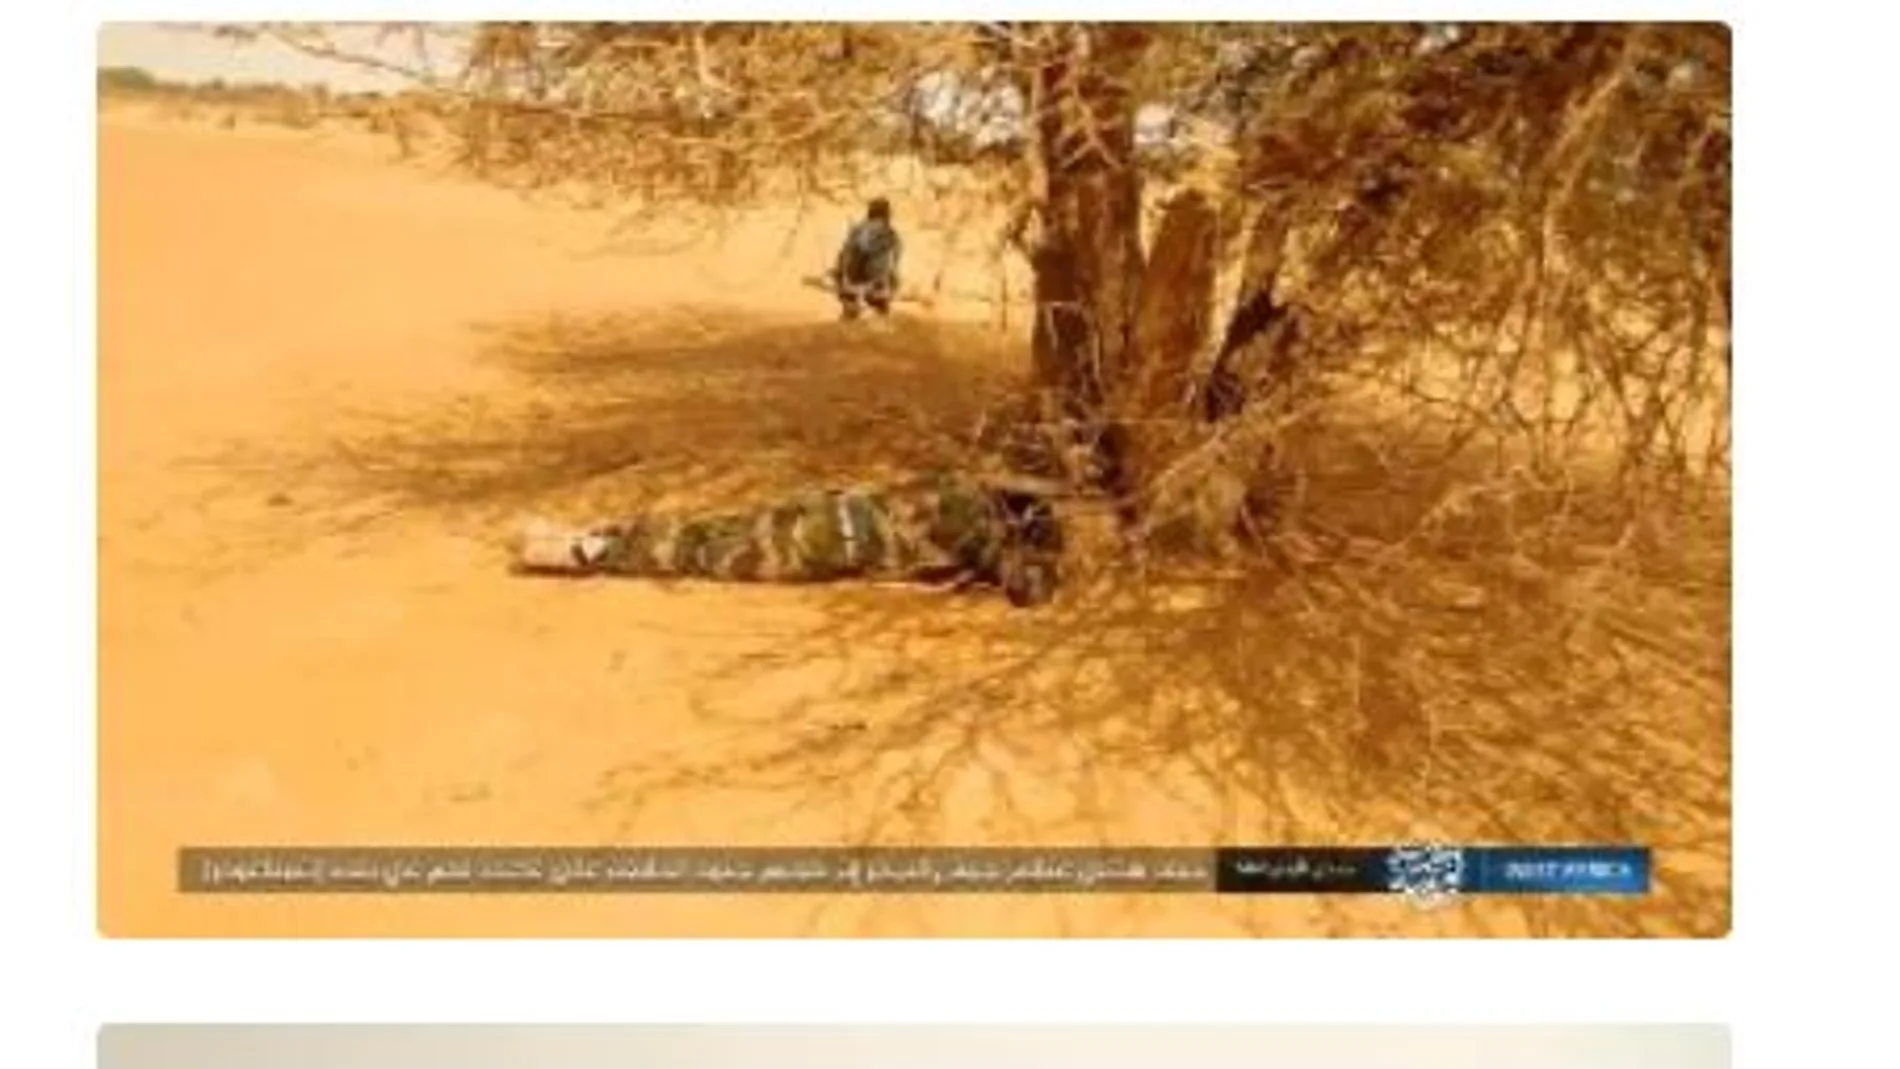 Soldados nigerinos asesinados tras haber sido perseguidos y atacados por la espalda en pleno desierto